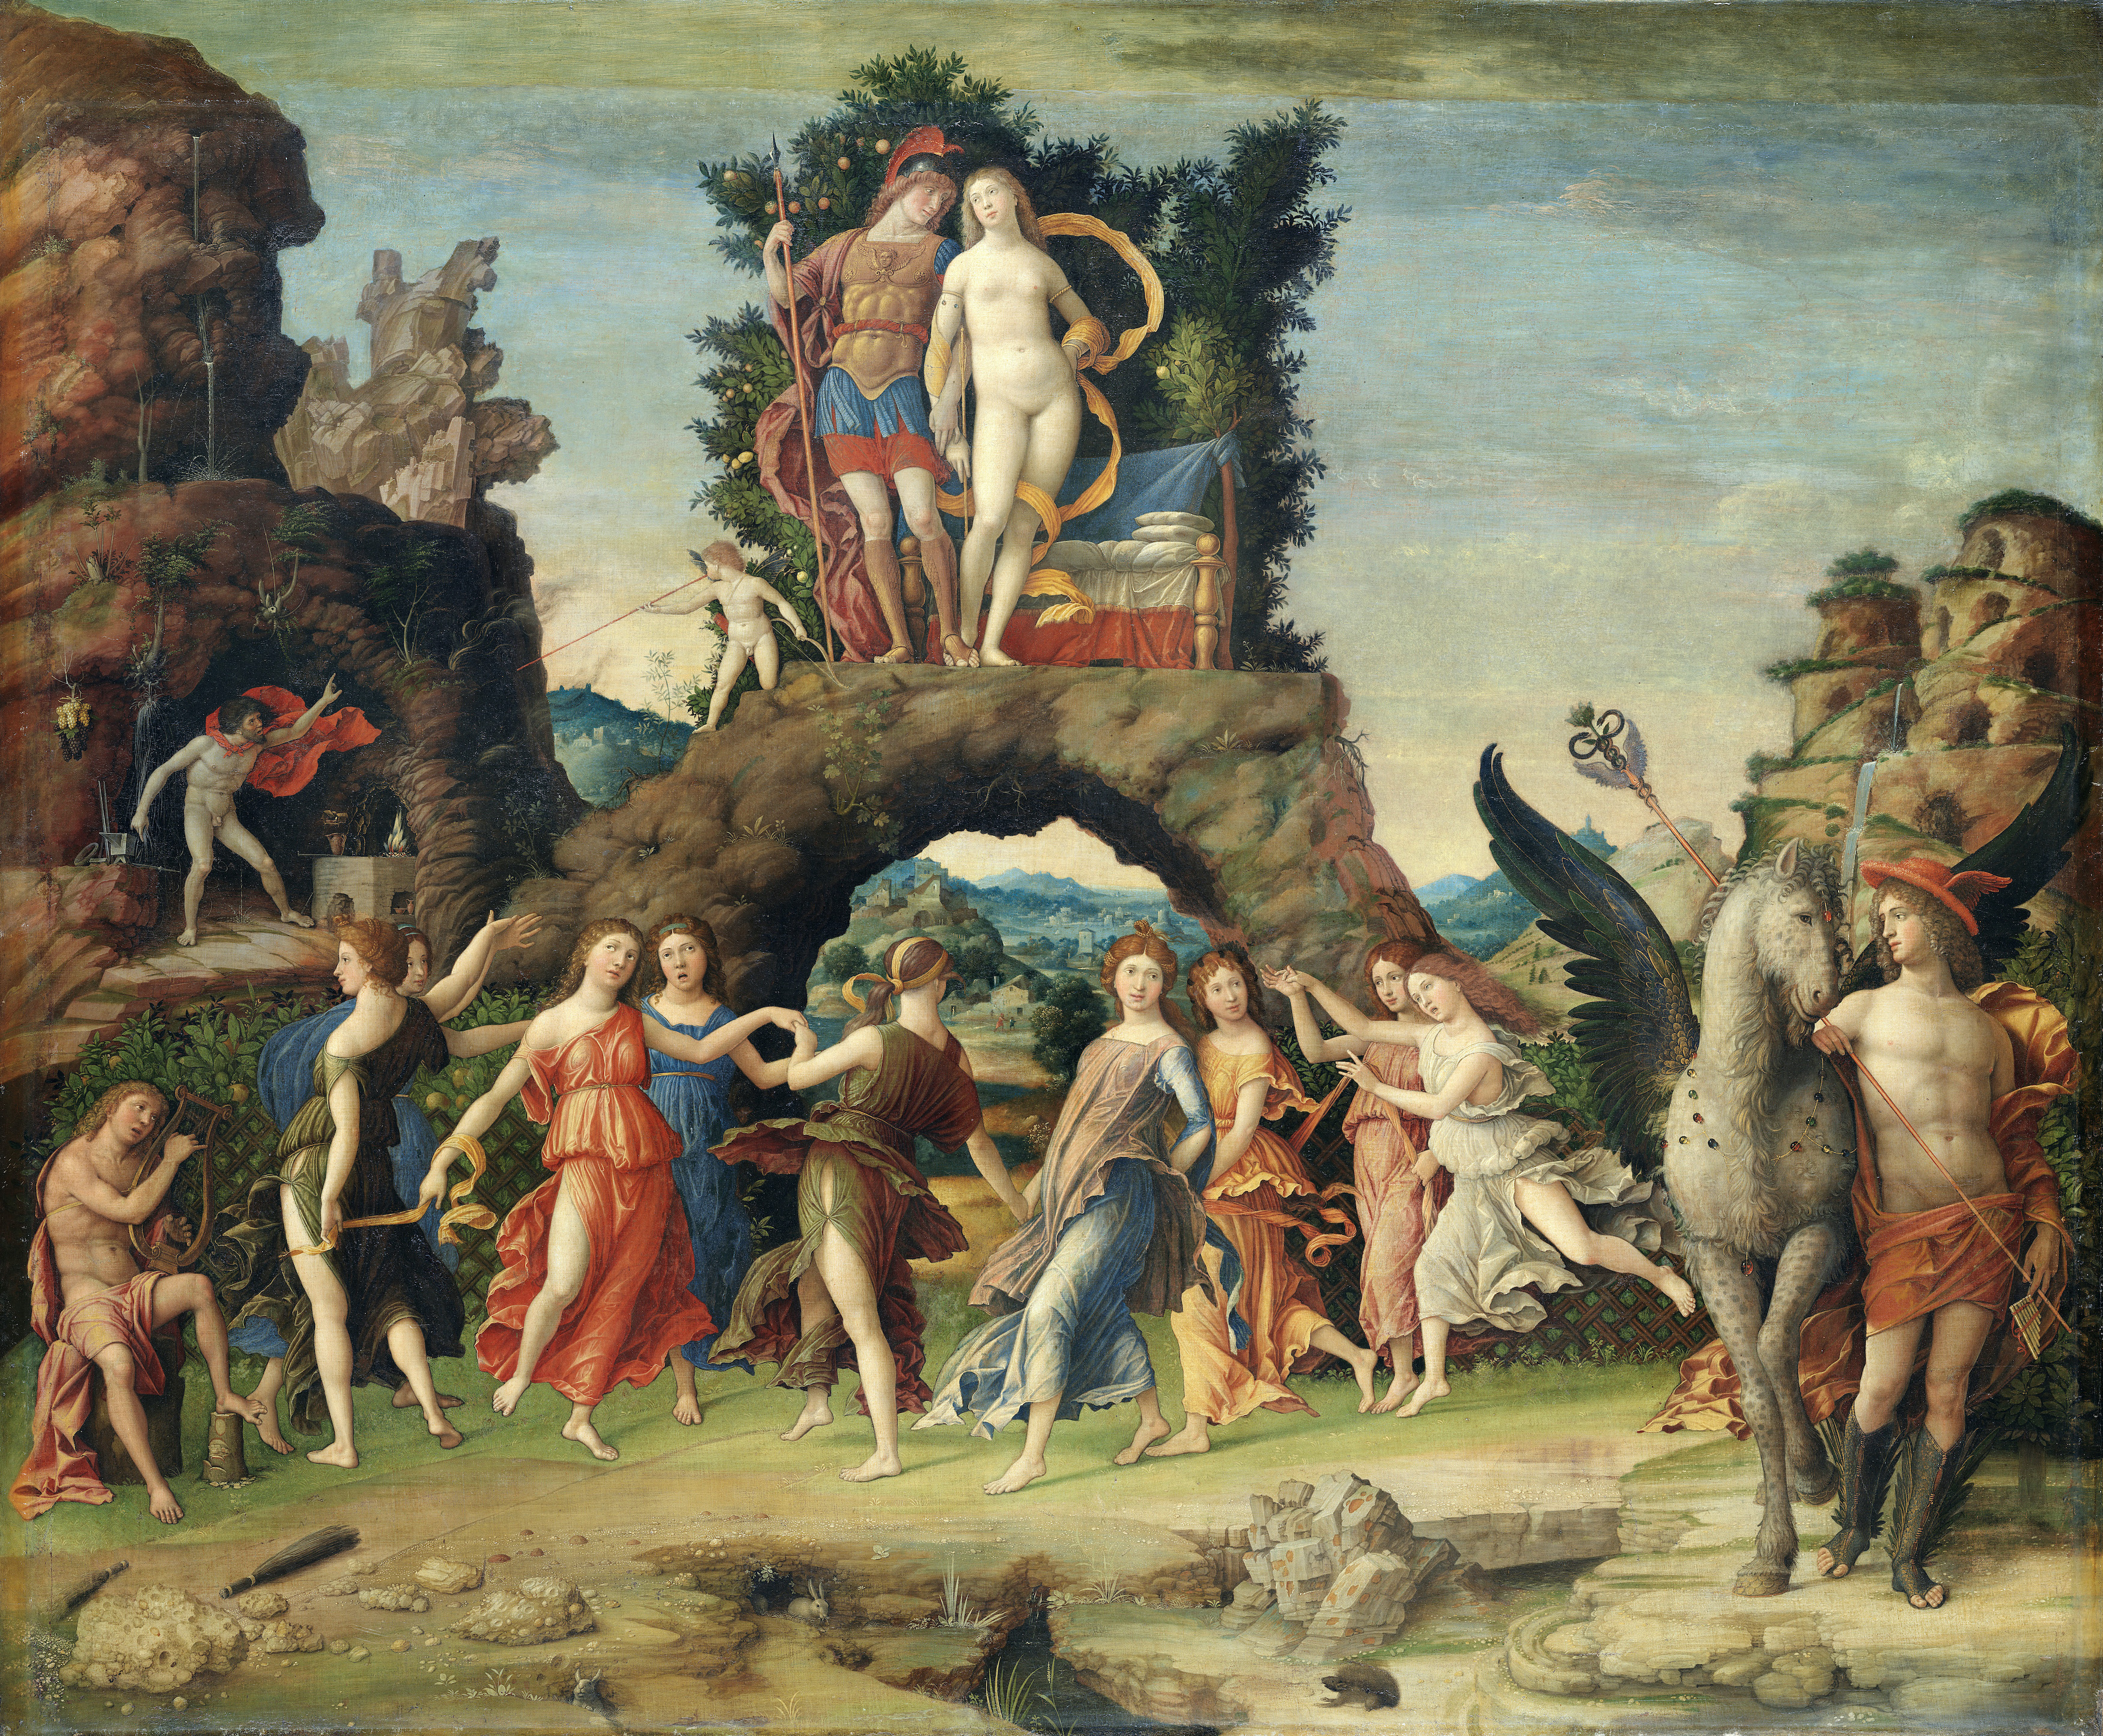 Le Parnasse by Andrea Mantegna - 1497 - 159 × 192 cm Musée du Louvre